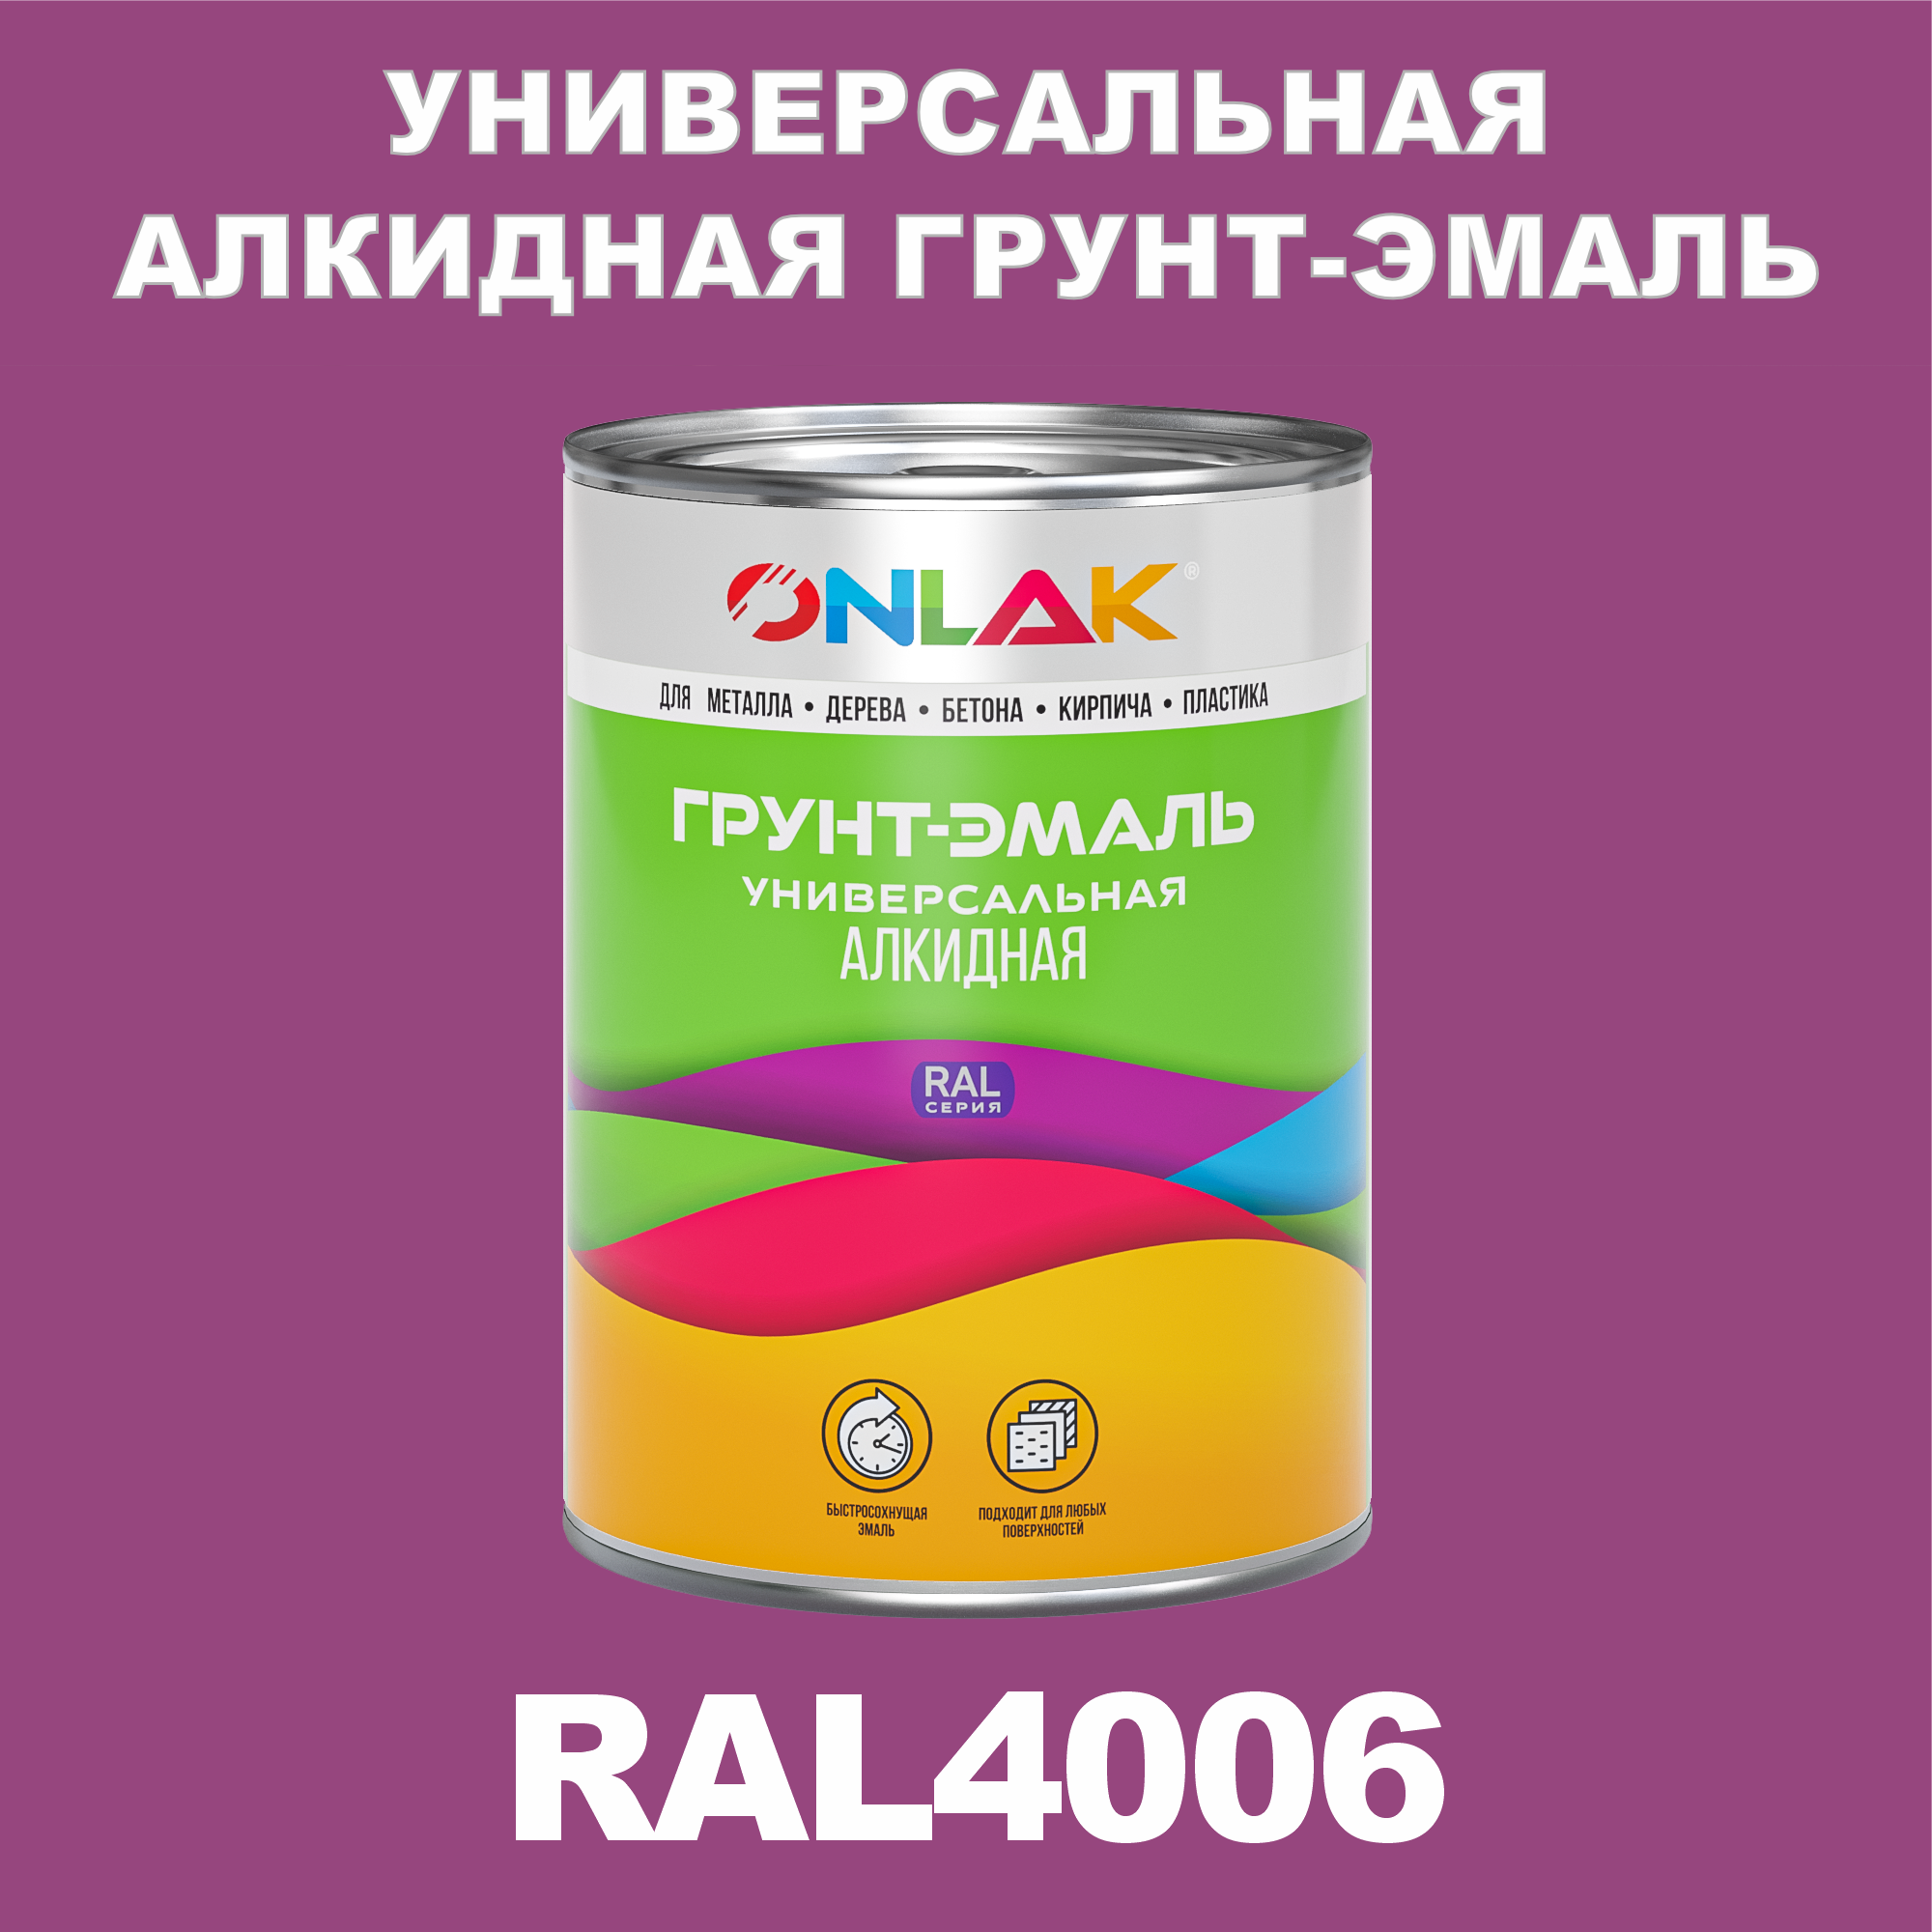 Грунт-эмаль ONLAK 1К RAL4006 антикоррозионная алкидная по металлу по ржавчине 1 кг антикоррозионная грунт эмаль onlak ral 4003 фиолетовый 542 мл